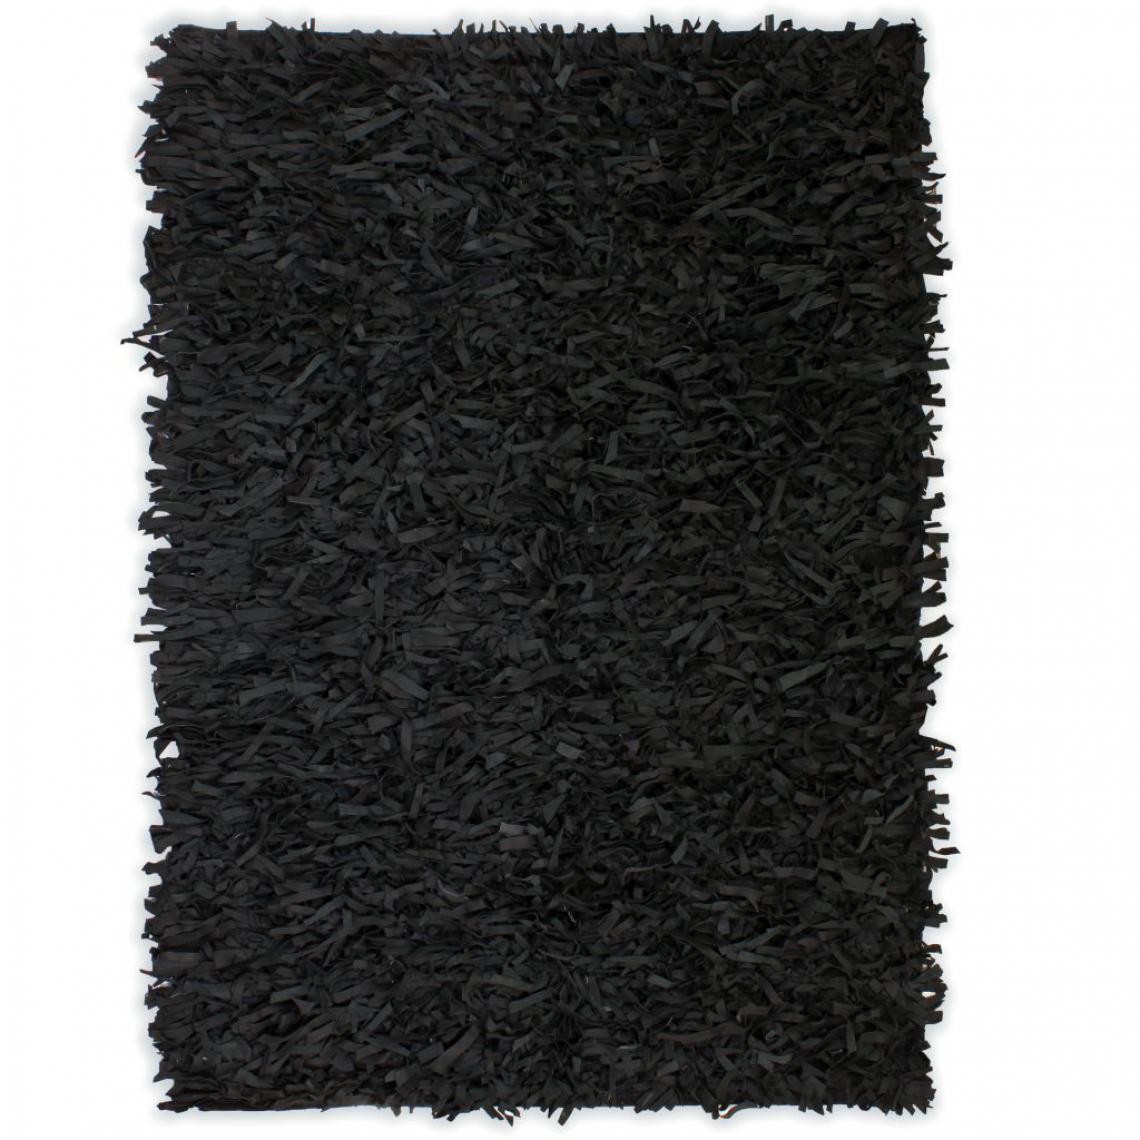 Chunhelife - Tapis shaggy Cuir véritable 160 x 230 cm Noir - Tapis